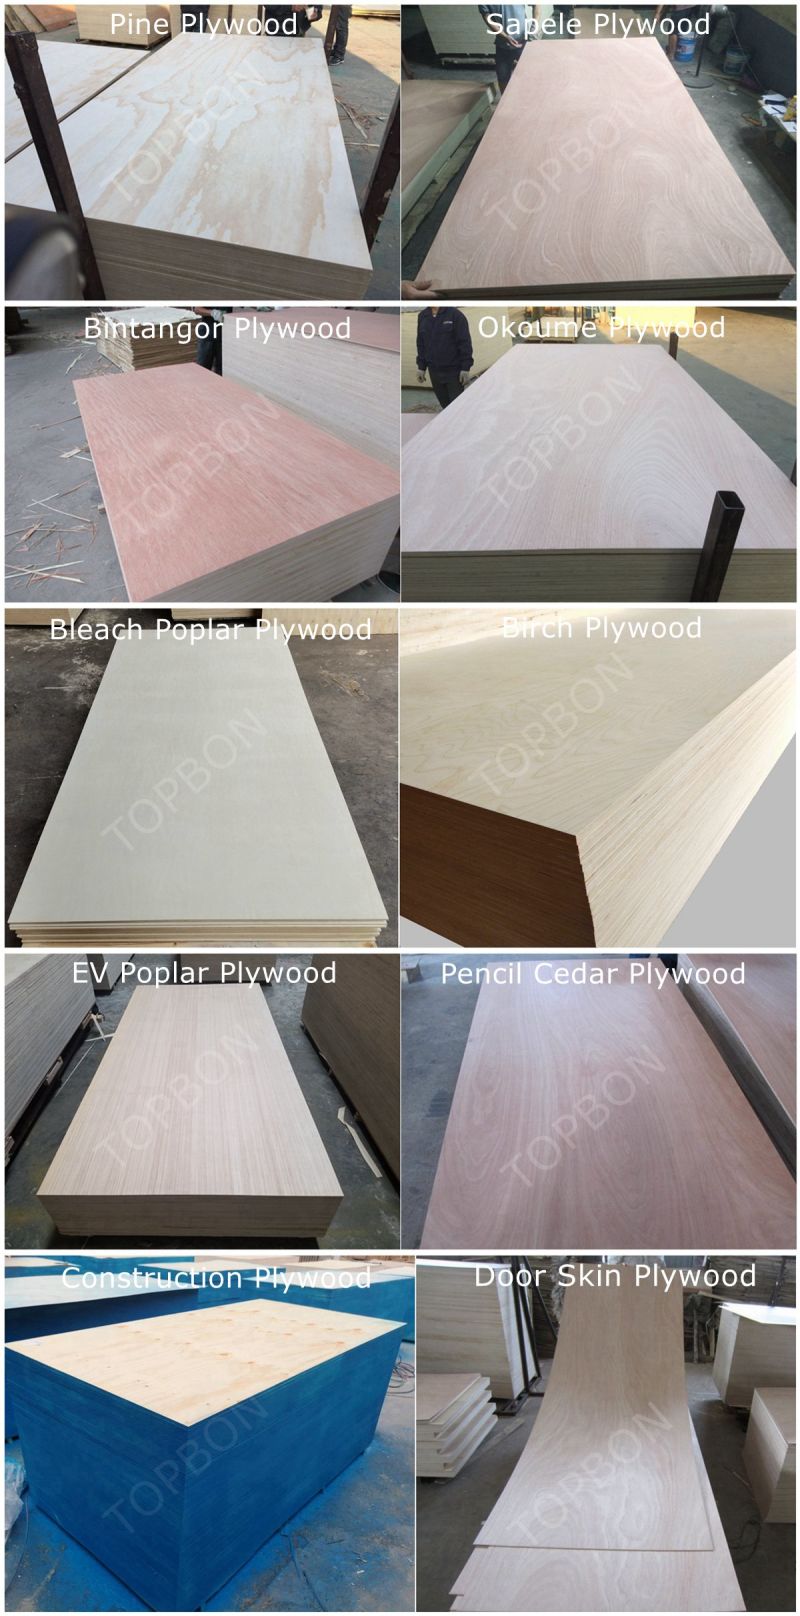 Bintangor Film Plywood with High Quality Poplar Core, Mr Glue